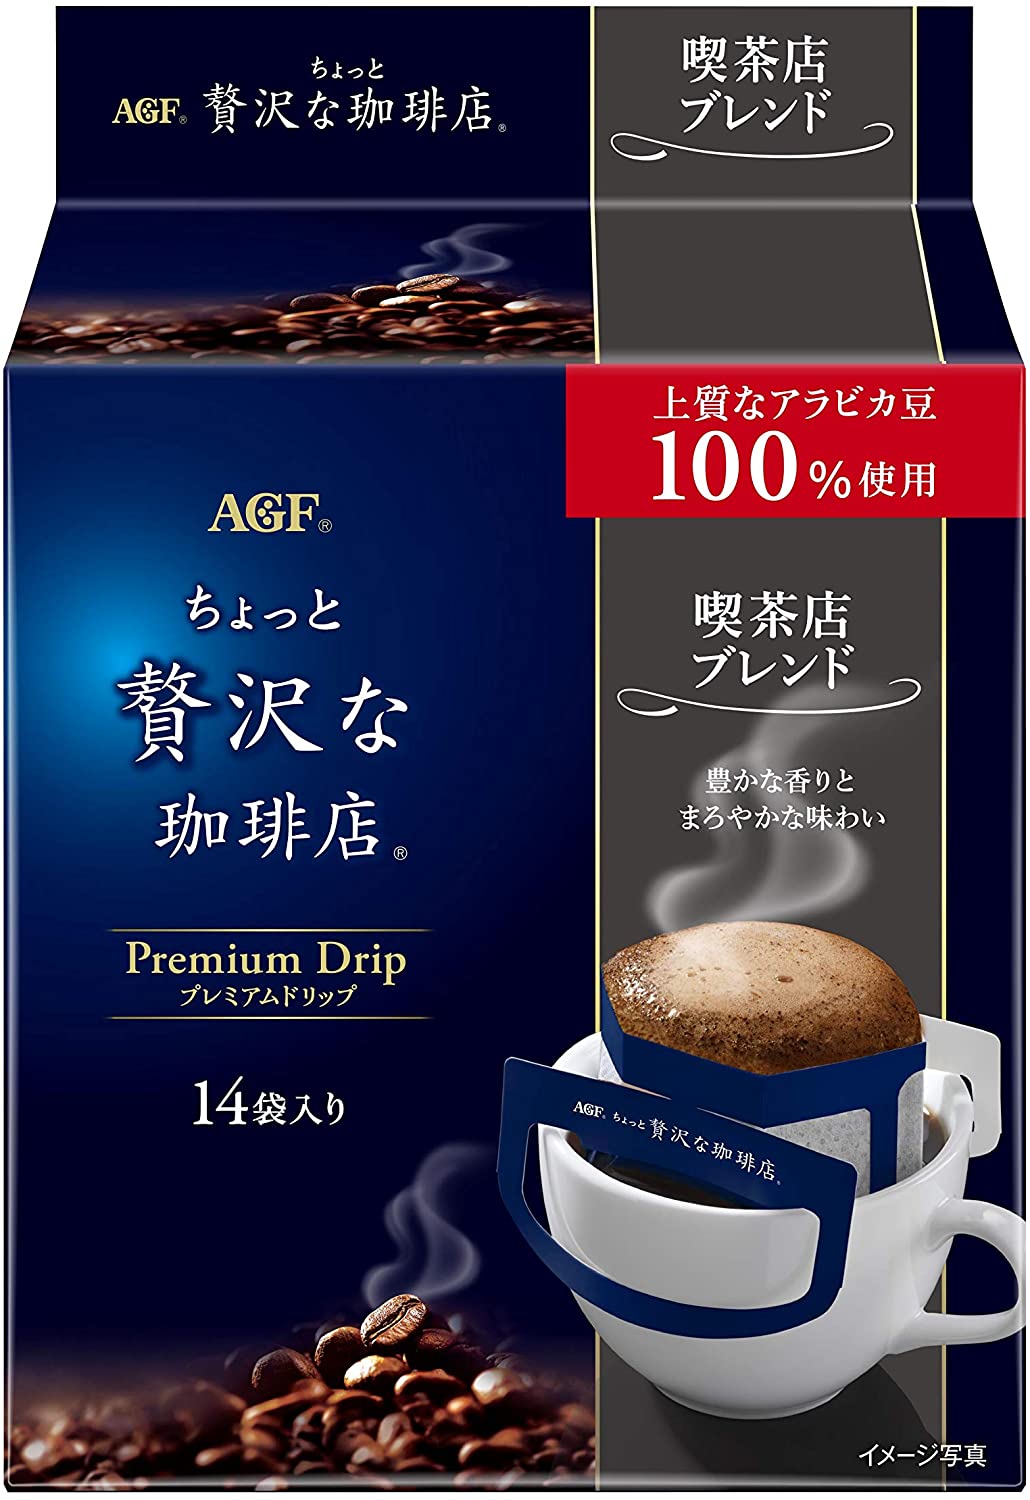 Натуральный молотый кофе быстрого приготовления Slightly Luxurious Coffee Shop Blend AGF, 8 гр х 14 шт